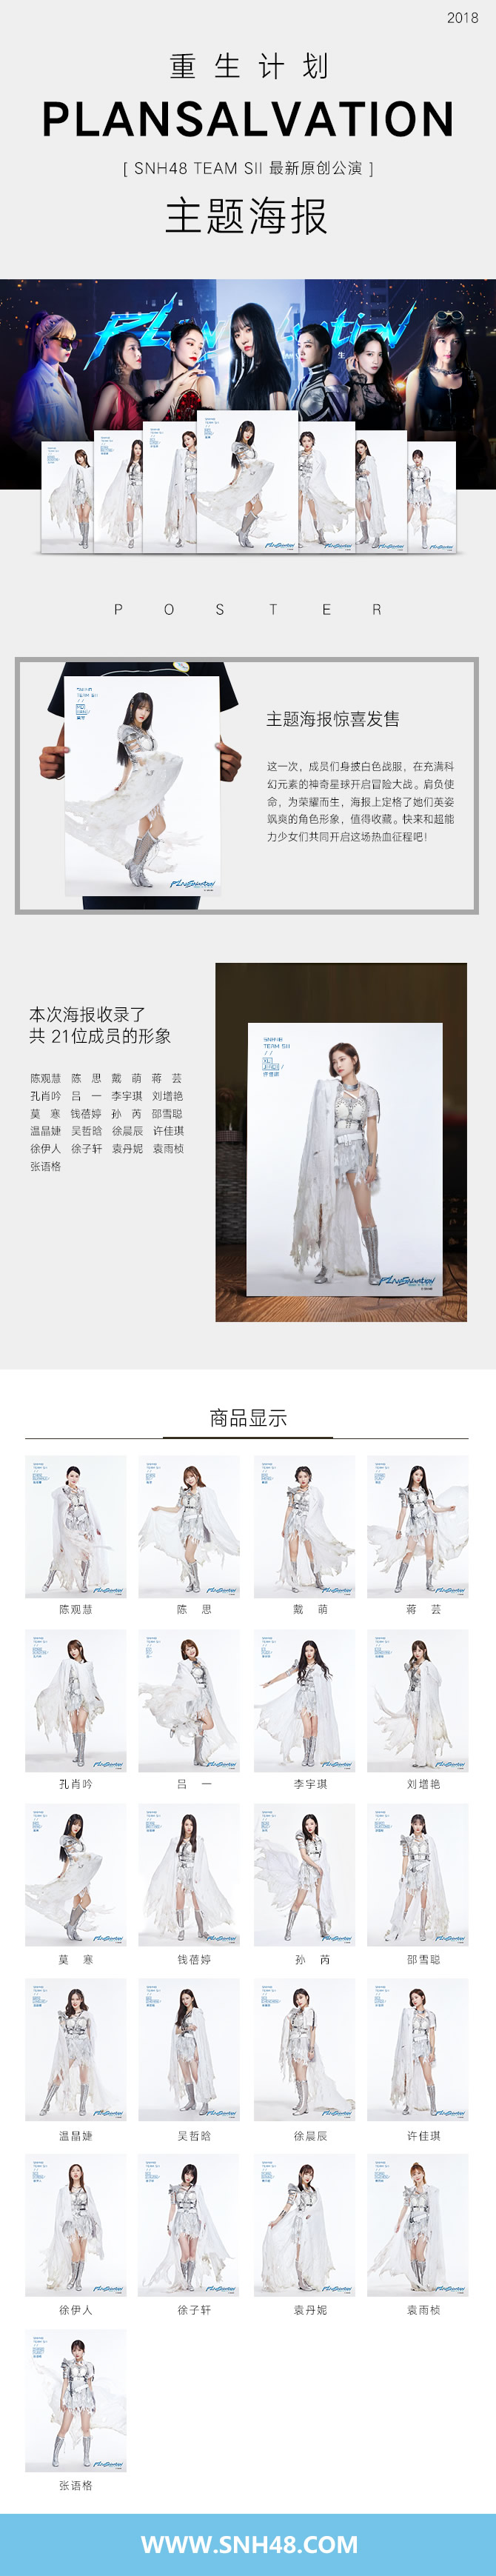 SNH48 TEAM SII全新原创公演同名小说《重生计划》起点中文网同步更新